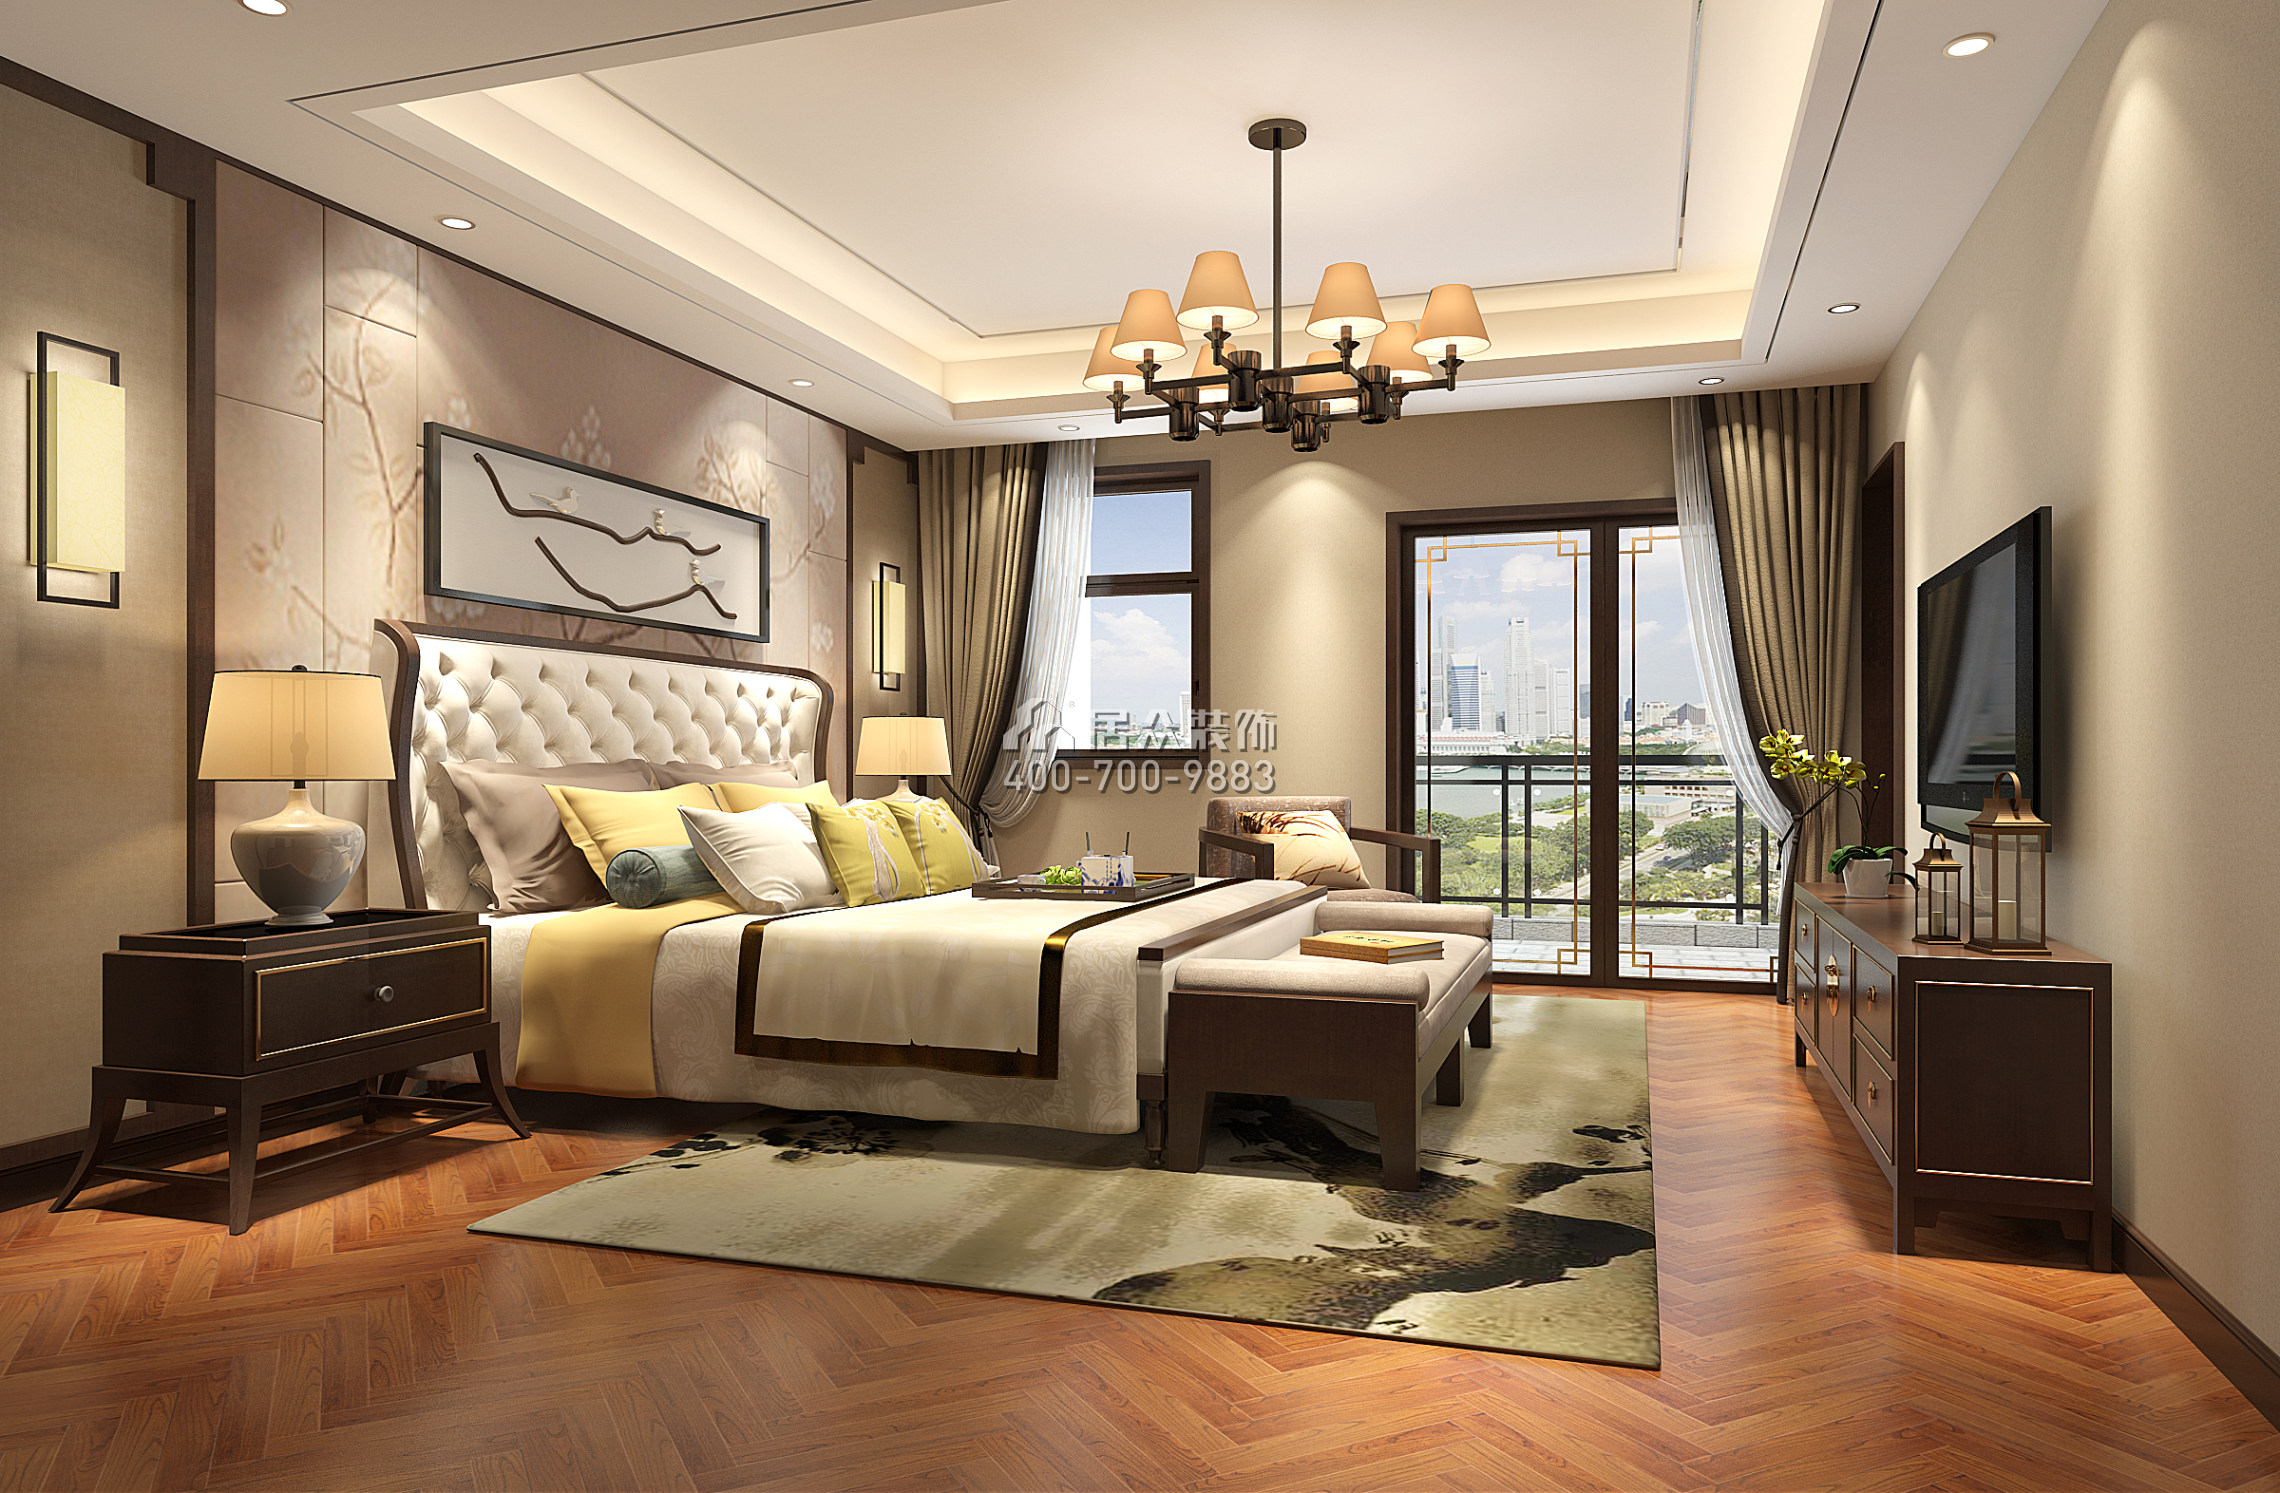 庆隆高尔夫钻石岛400平方米中式风格别墅户型卧室装修效果图